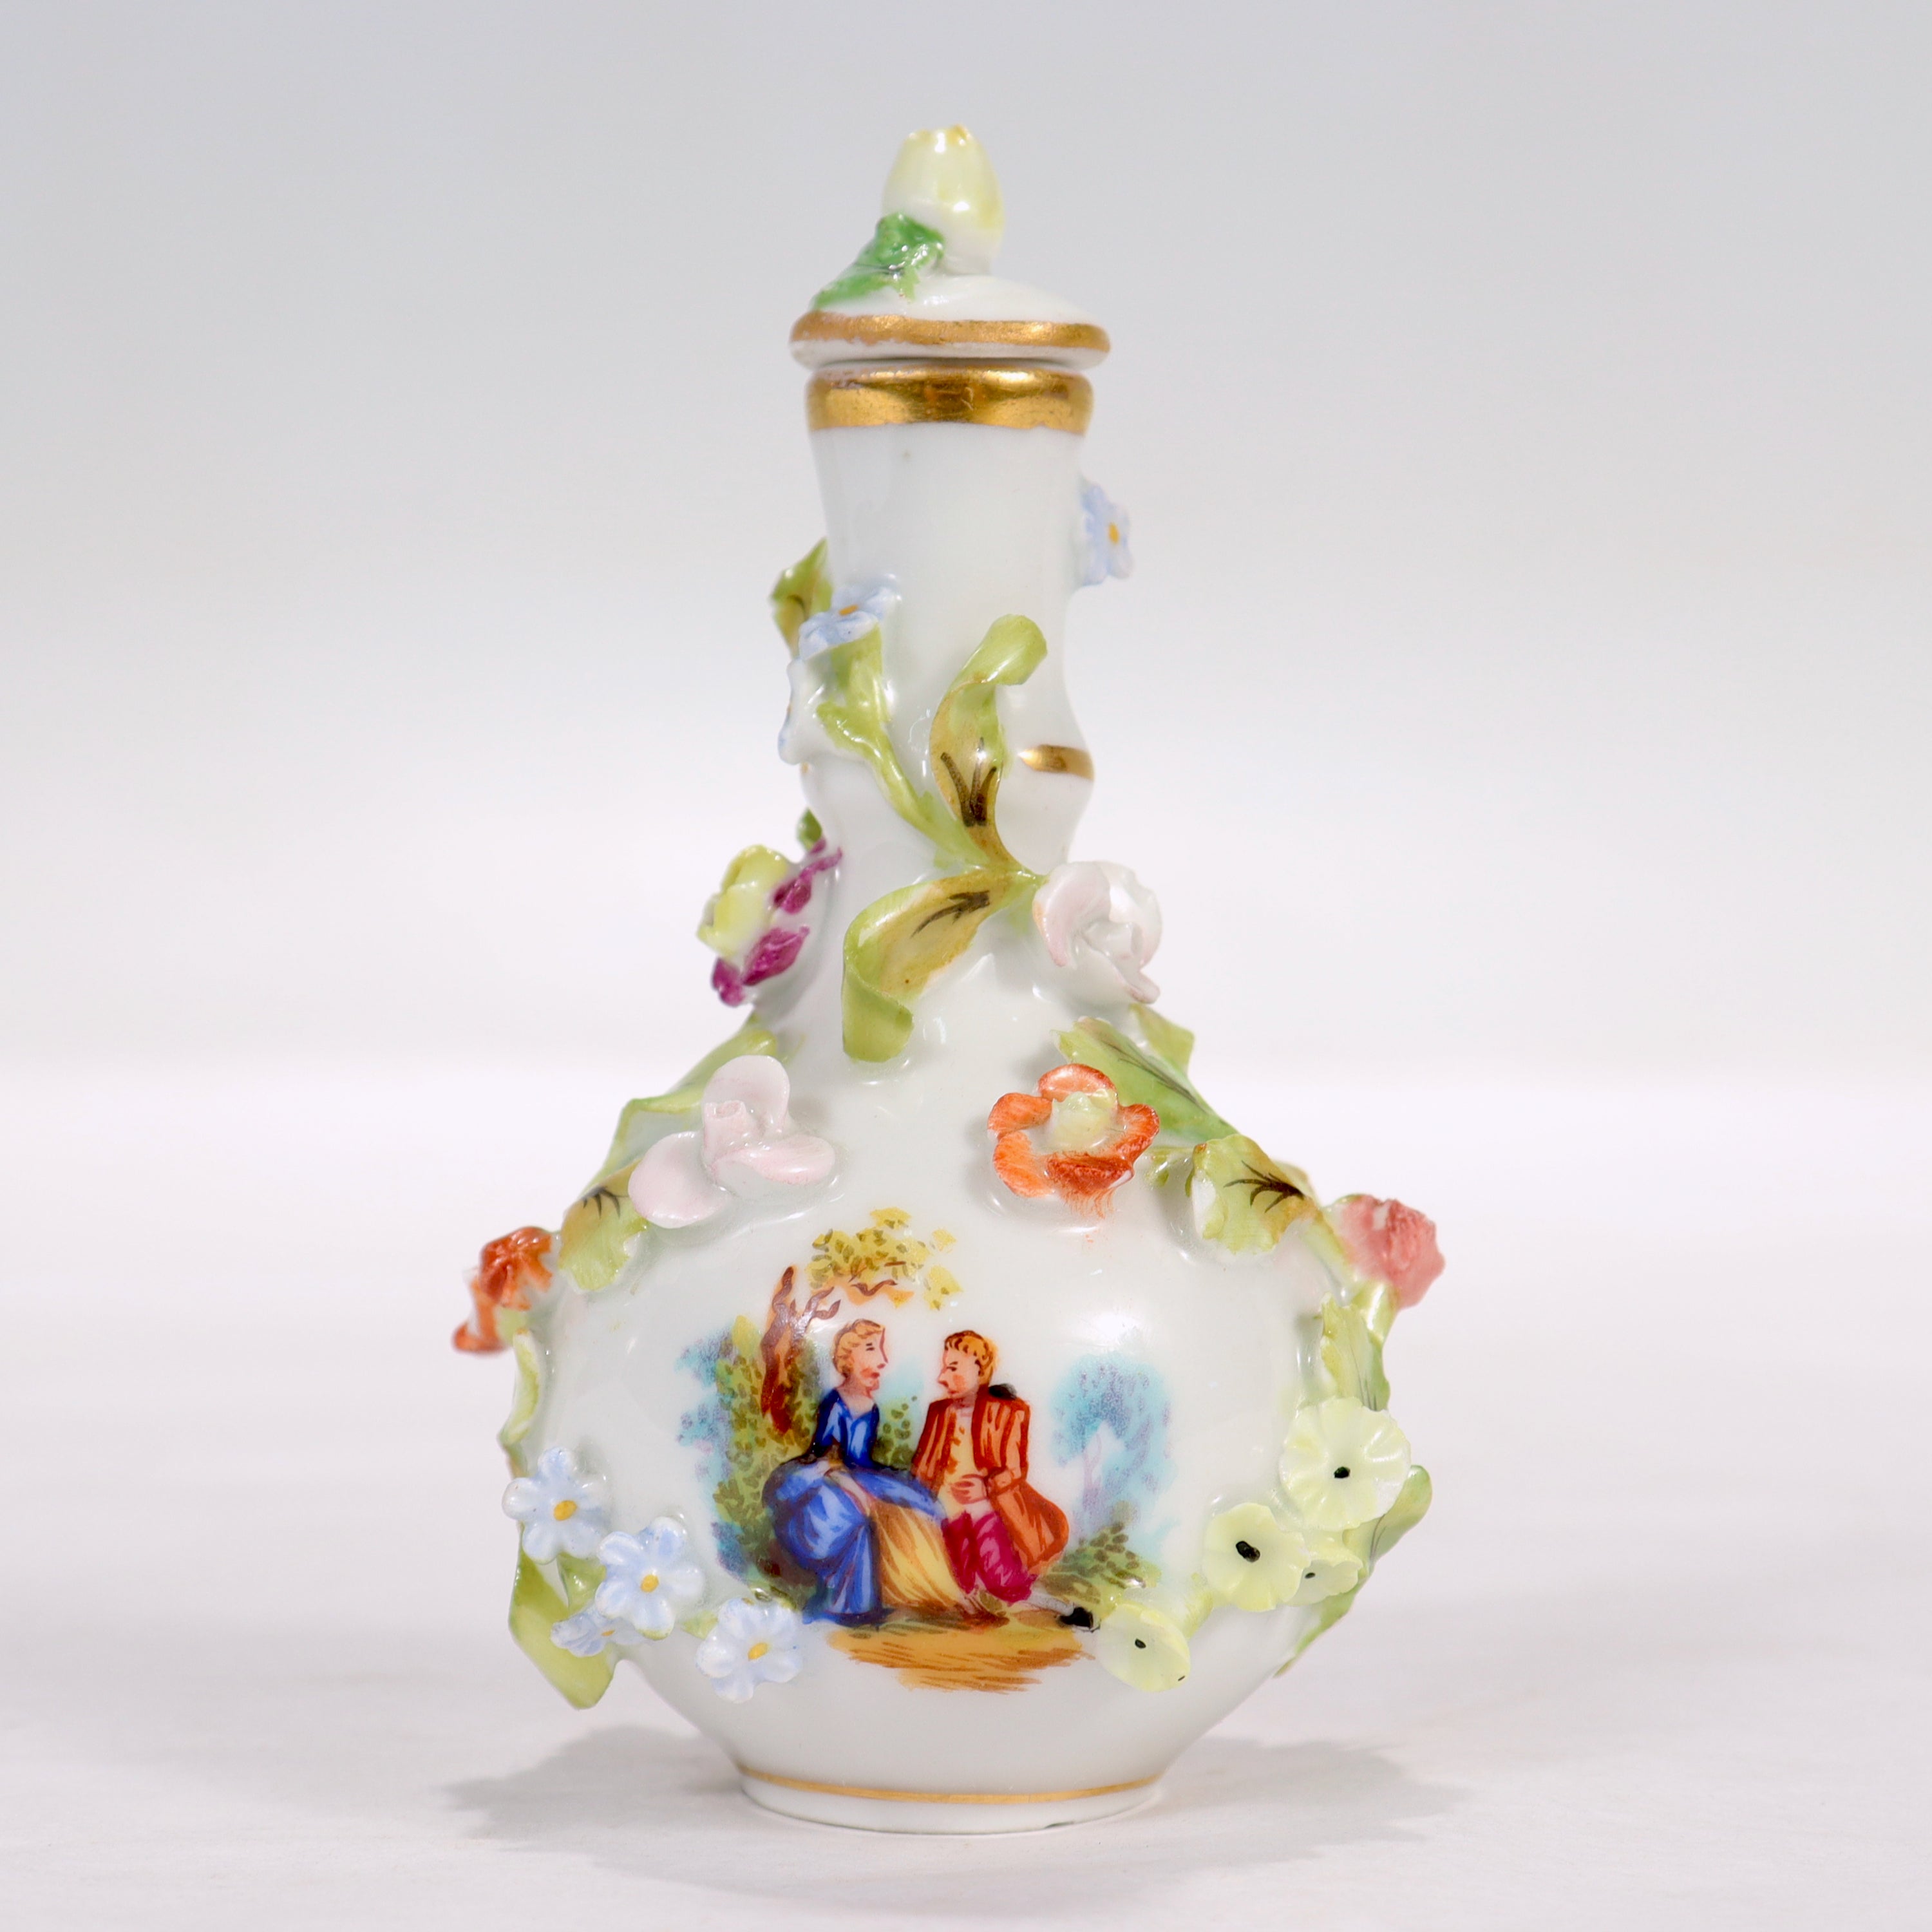 Eine feine antike Miniatur Dresden Porzellan Parfümflasche.

Von Thieme Potschappel.

Durchgehend mit Blumen aus Porzellan und gemalten Szenen verziert. Die eine Seite der Flasche ist mit Blumen bemalt, die andere mit einer Szene, die einen